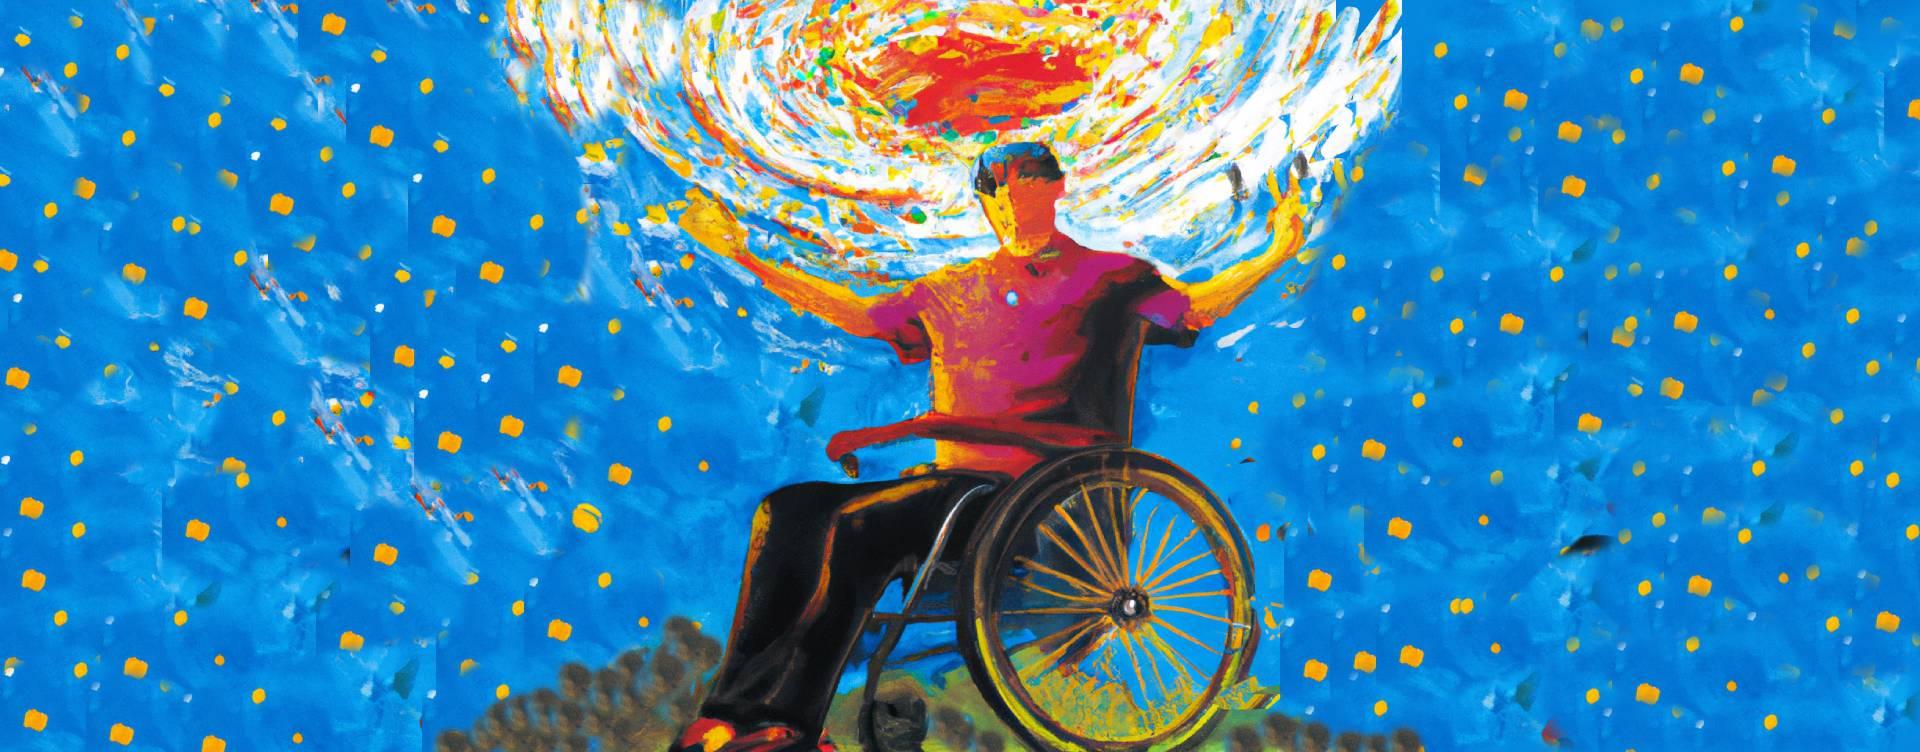 persona invidente en una silla de ruedas con el universo en sus manos por la noche en una montaña